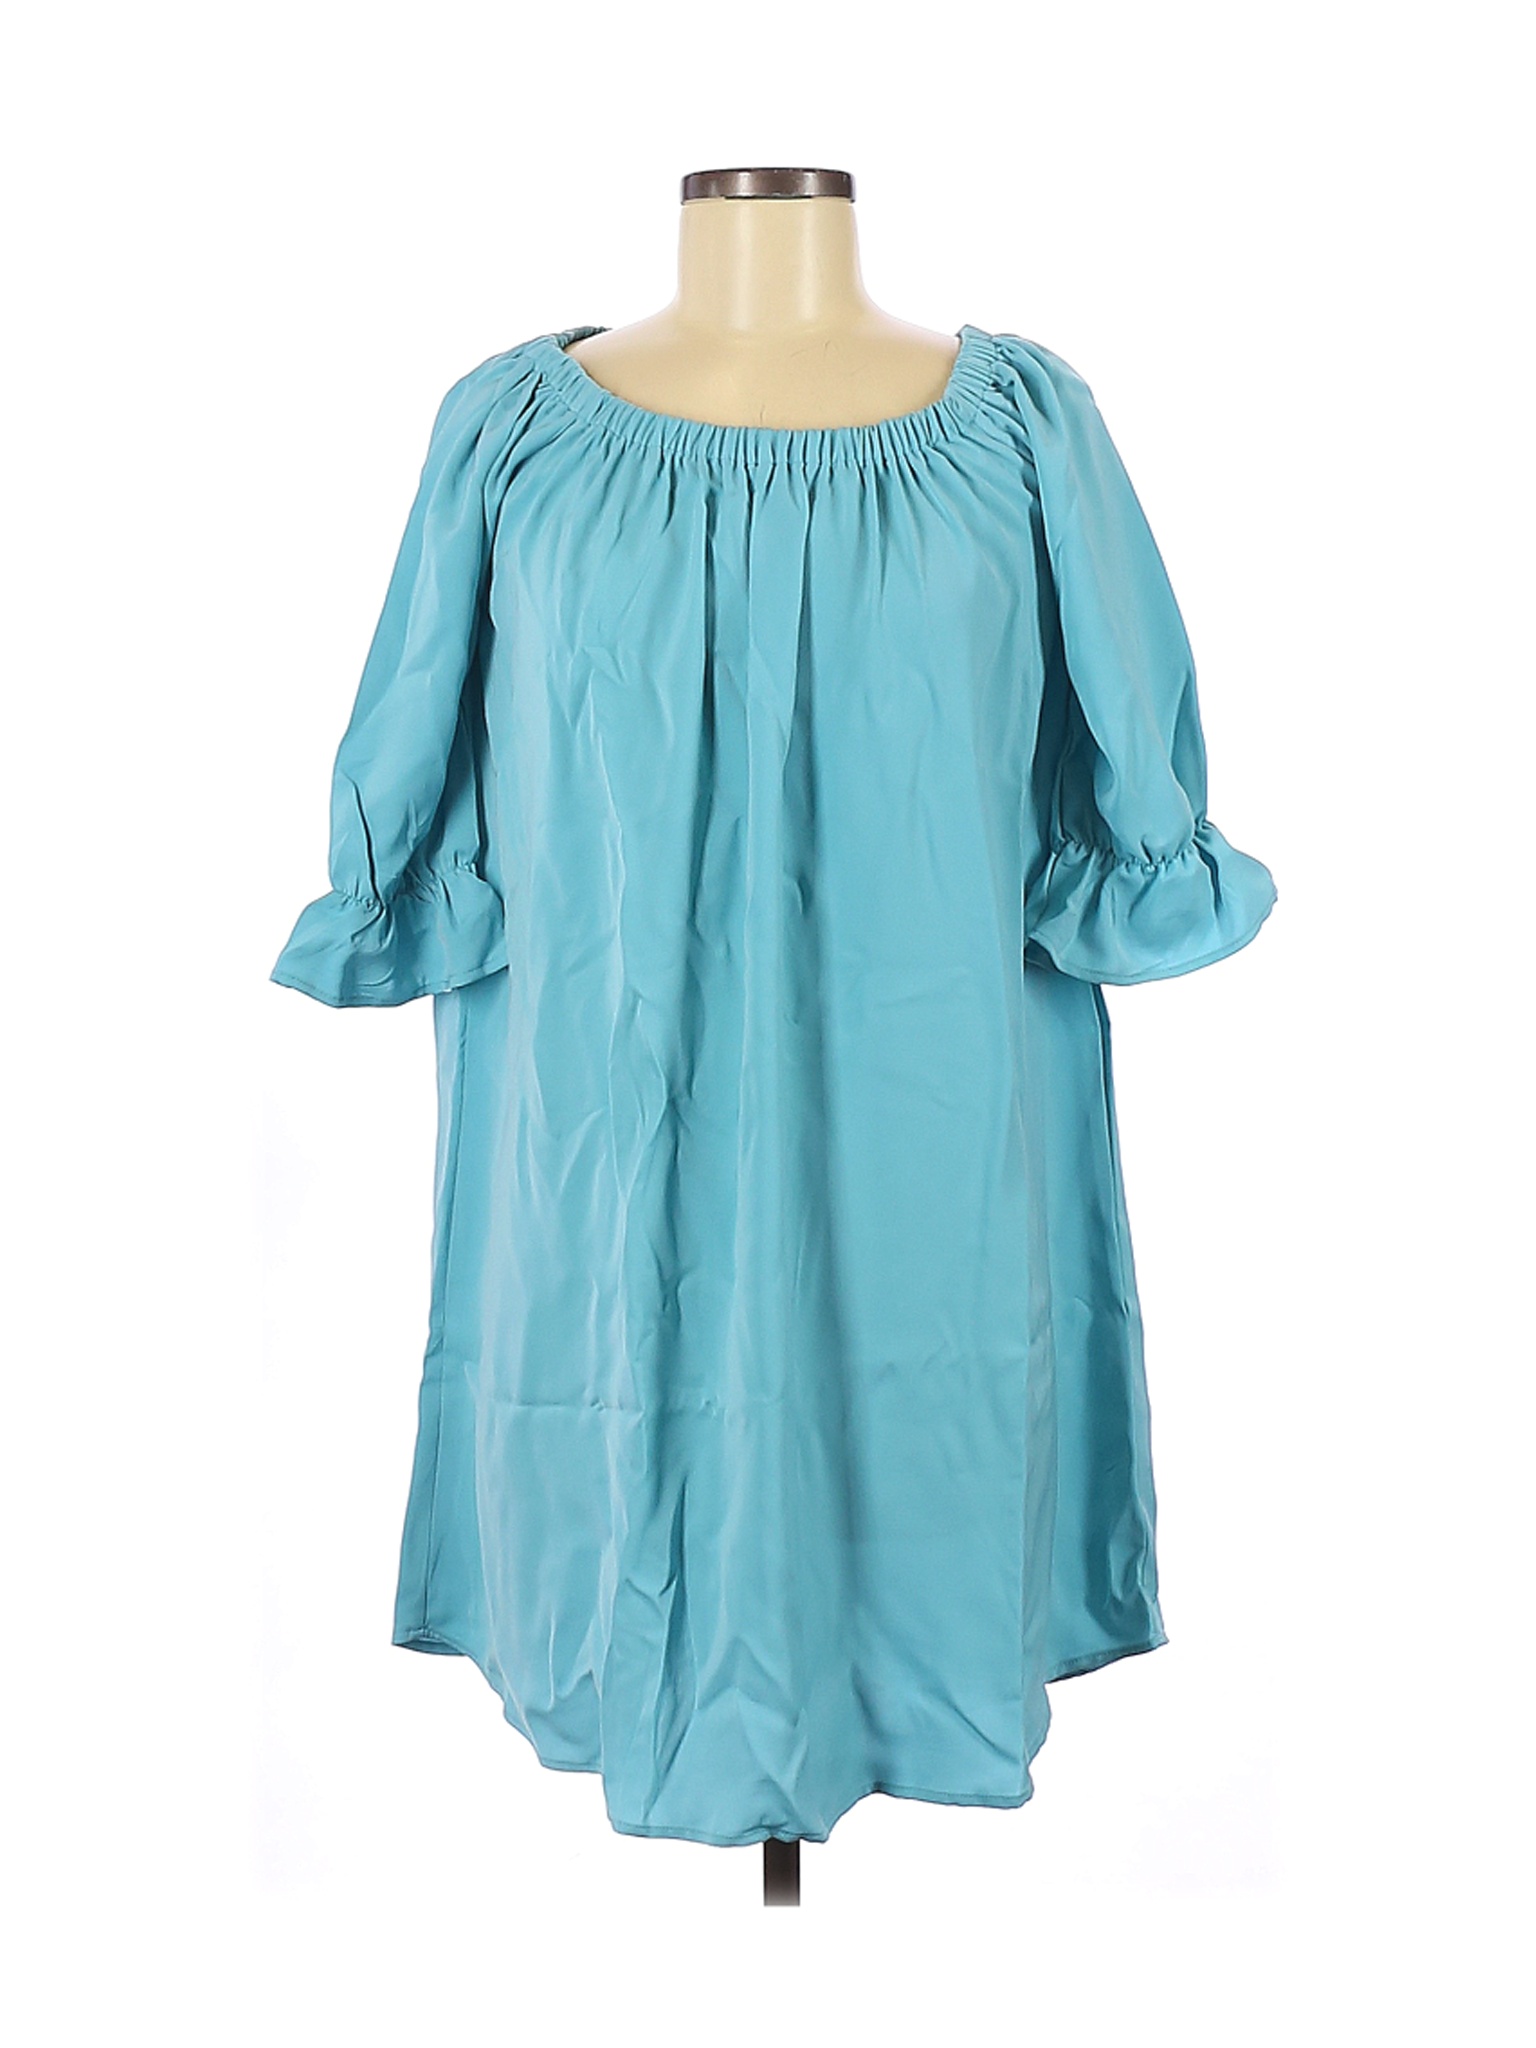 JW (JW Style) Women Blue Casual Dress S | eBay